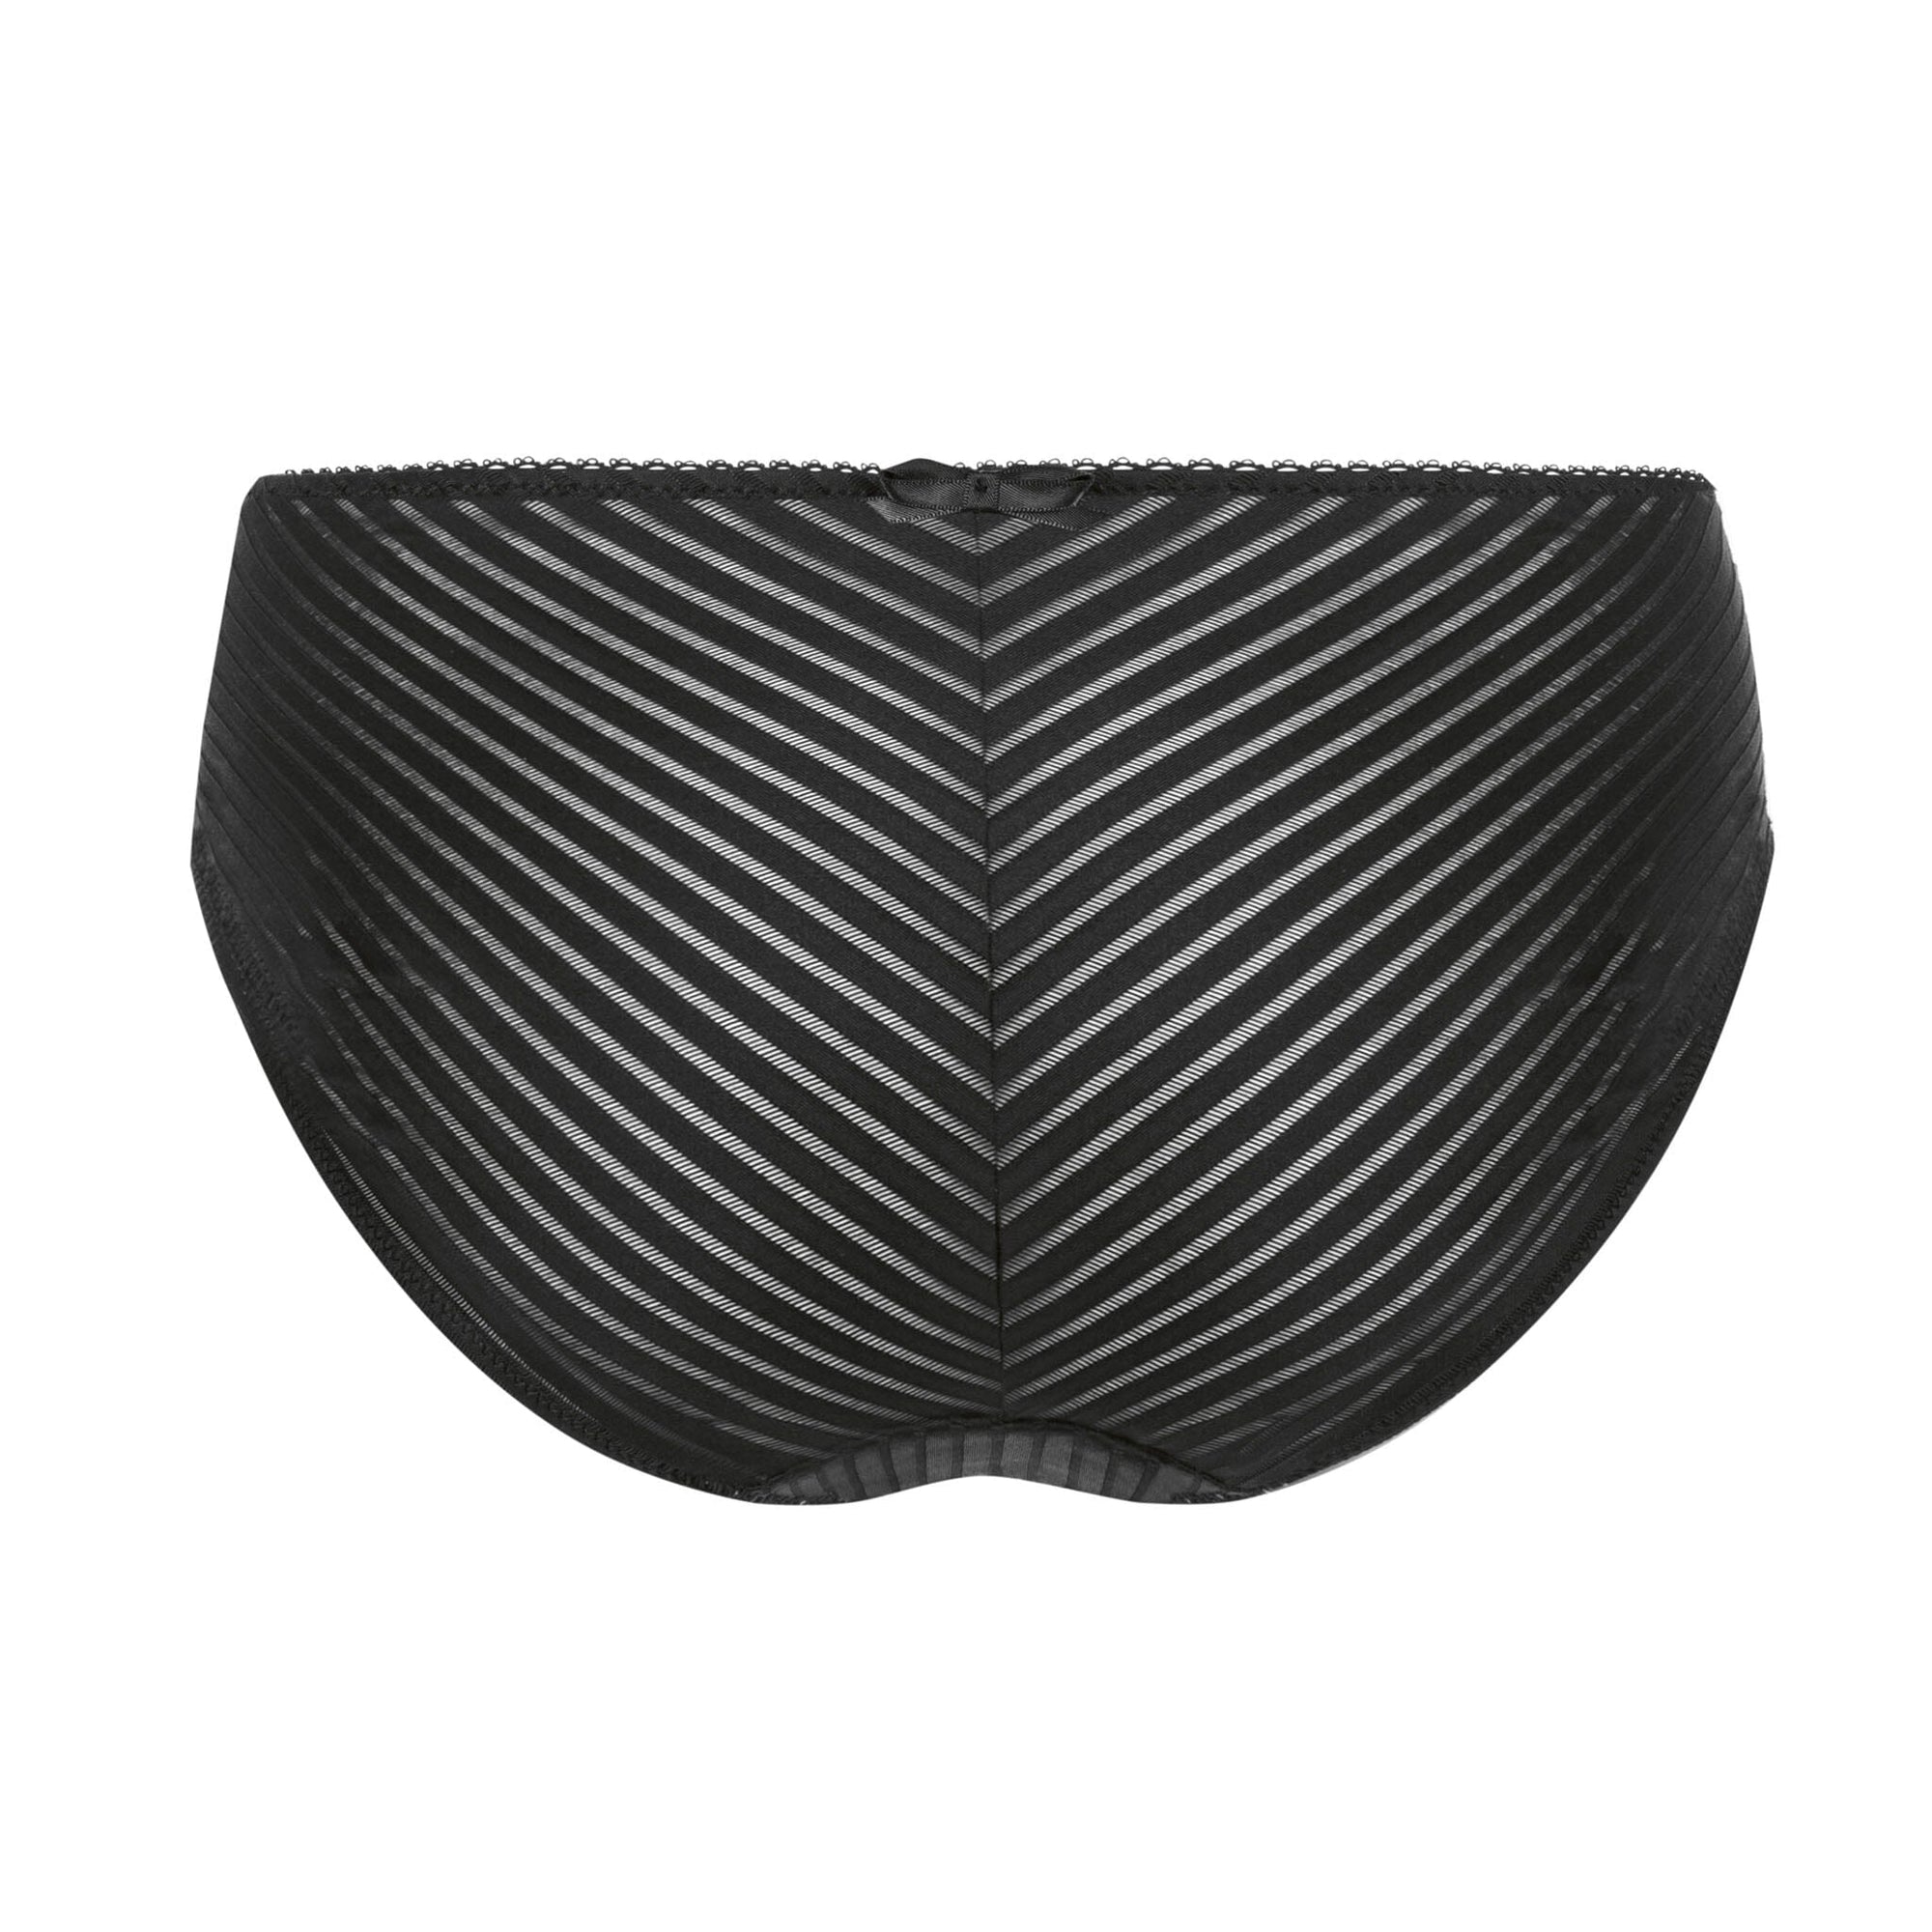 Amoena® Karolina Panty Shown in Black/Nude-Back View